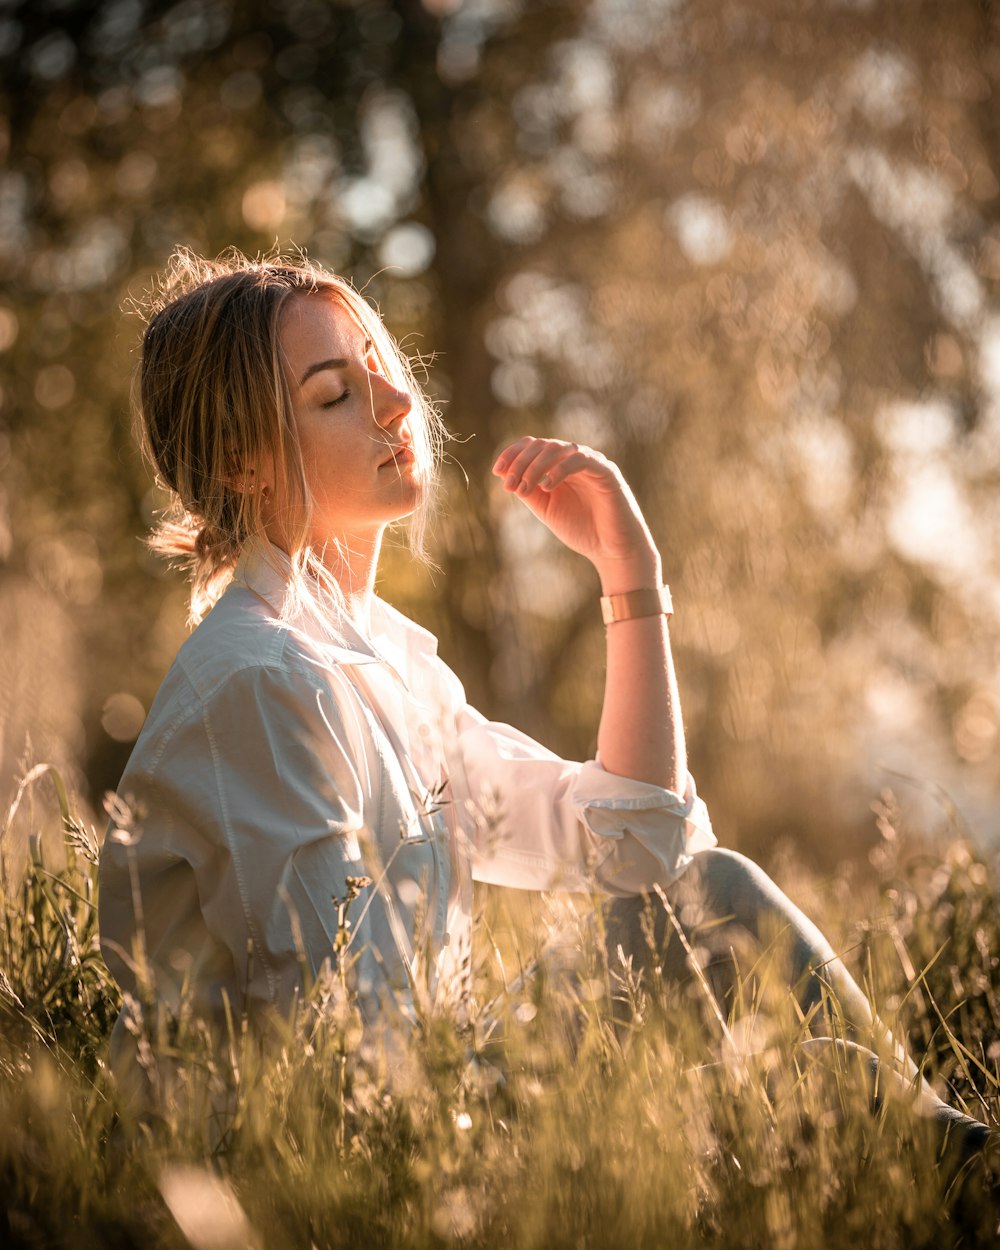 donna in vestito bianco che si siede sull'erba marrone durante il giorno